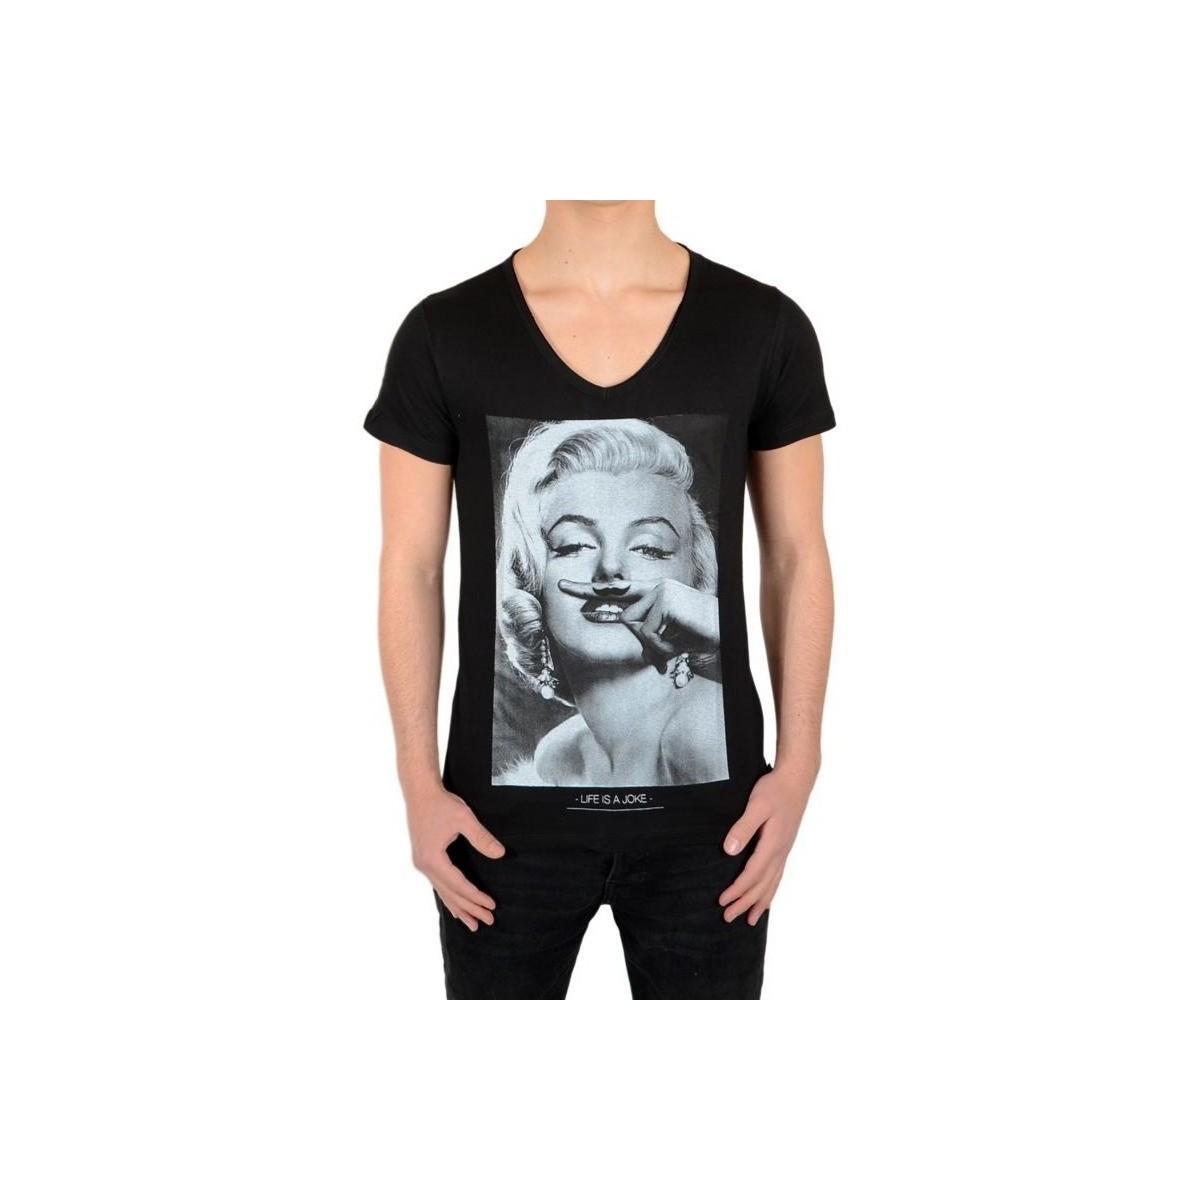 Vêtements Fille T-shirts manches courtes Eleven Paris Marilyn SS Mixte Noir